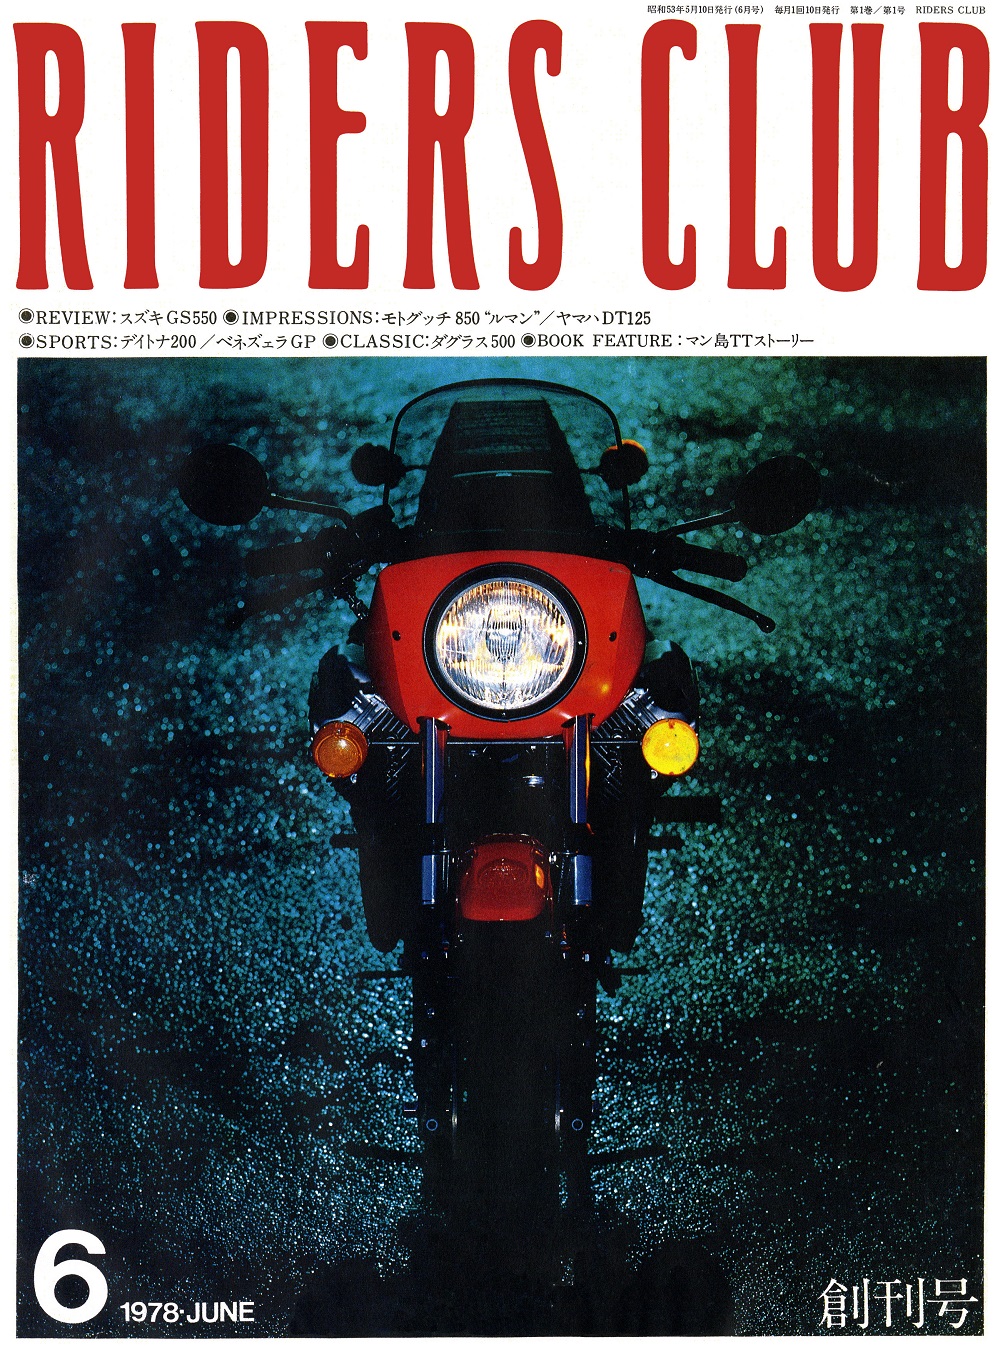 バイク雑誌「RIDERS CLUB」500号の記念特典は、創刊号から37年分・記事